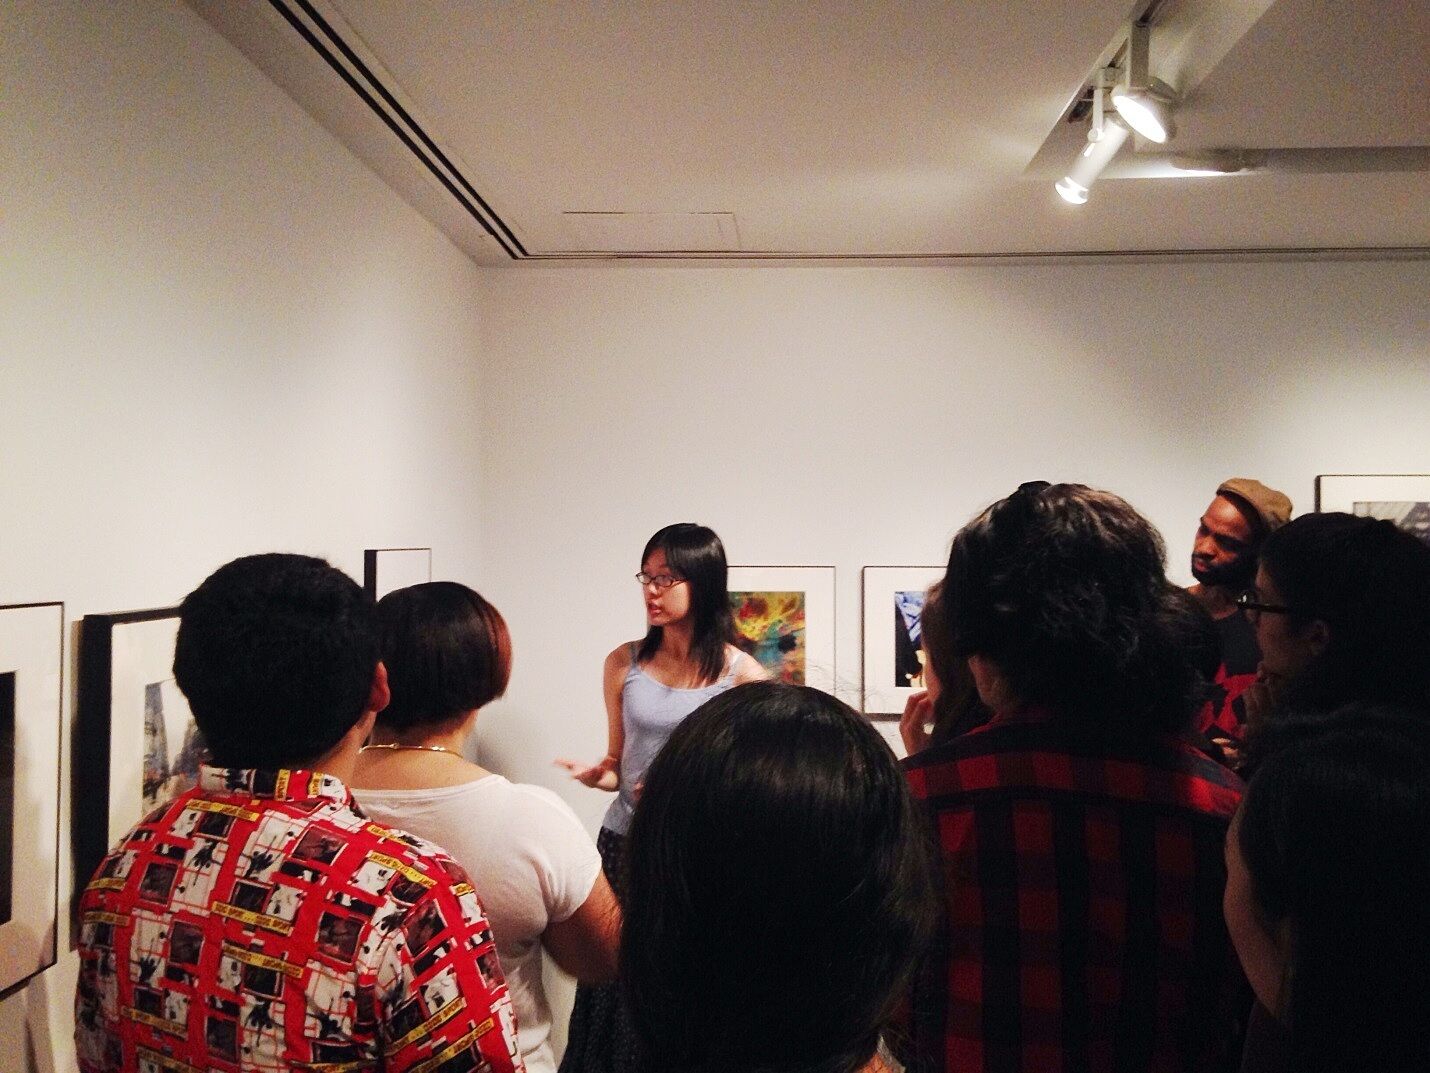 participant explains art to group